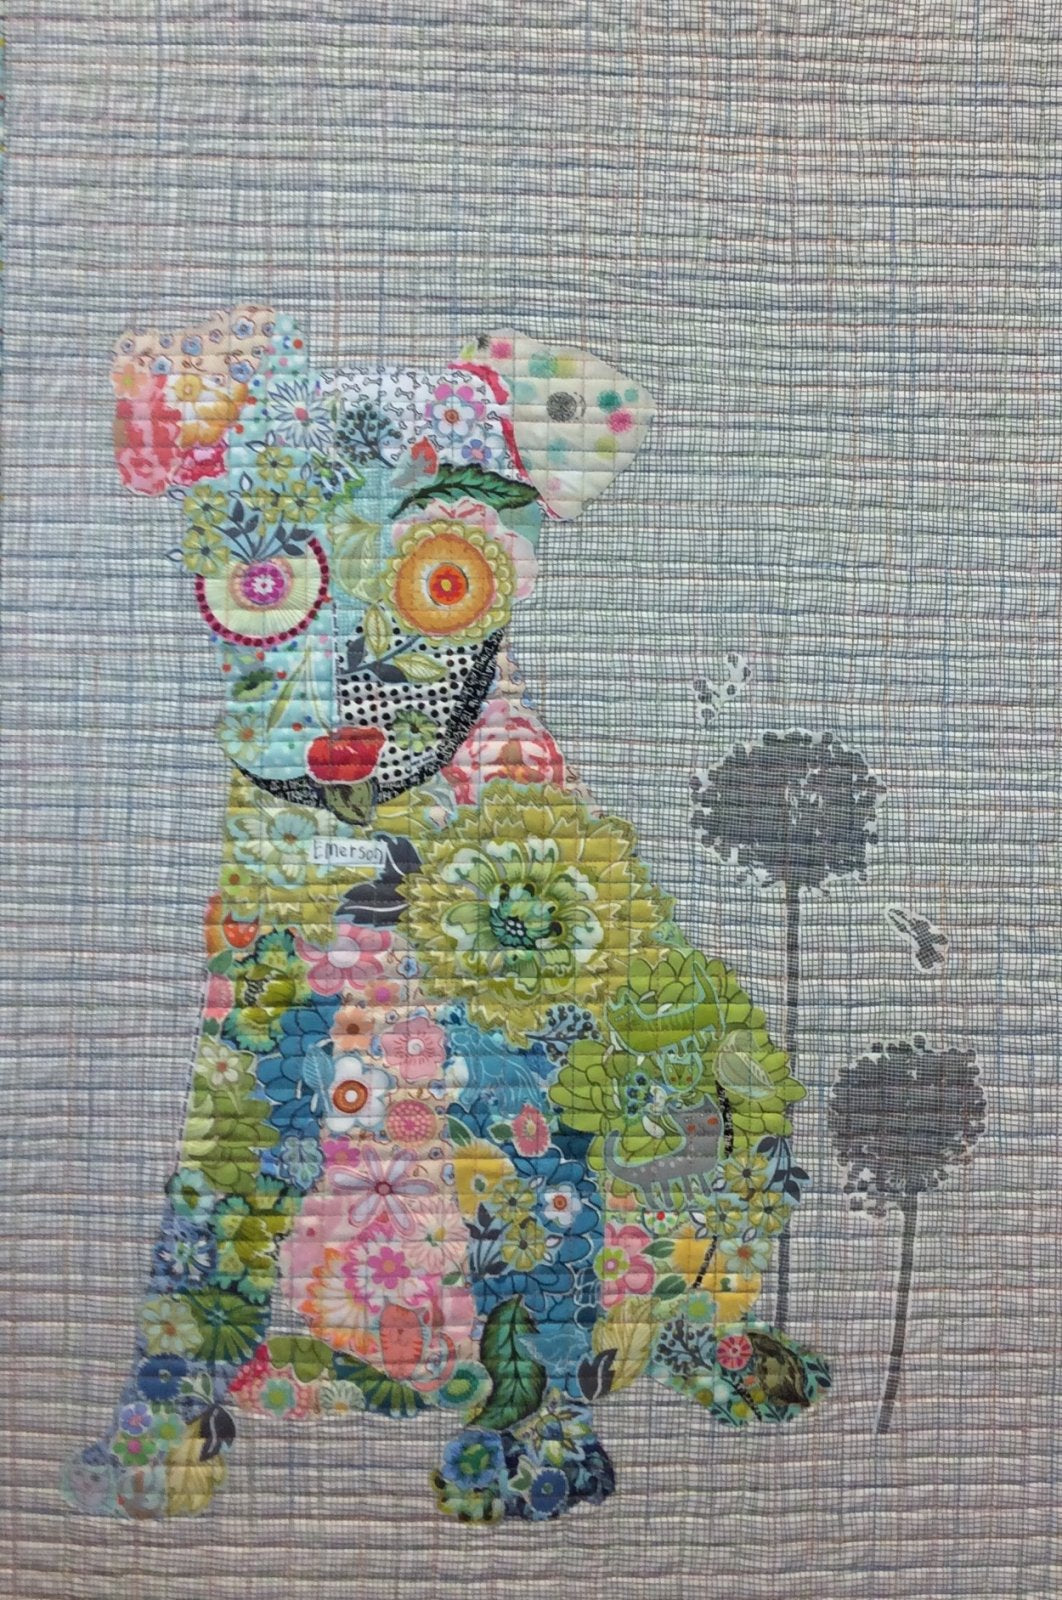 Emerson Puppy Collage Pattern by Laura Heine